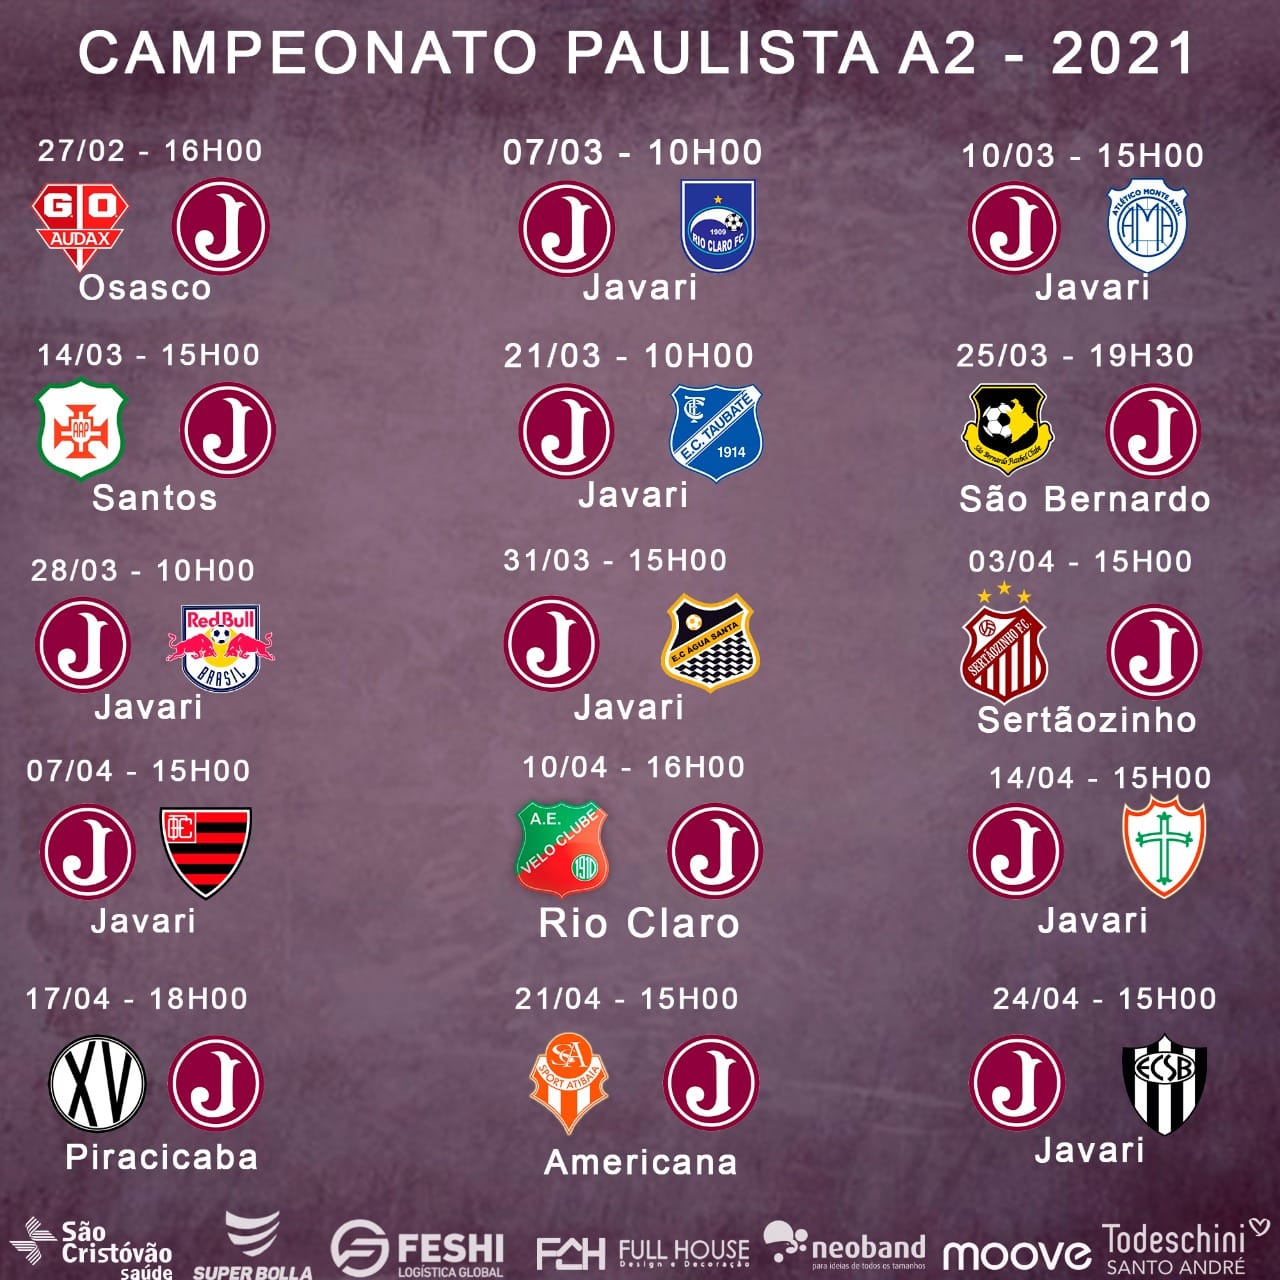 Tabela do Campeonato Paulista de vôlei feminino 2023